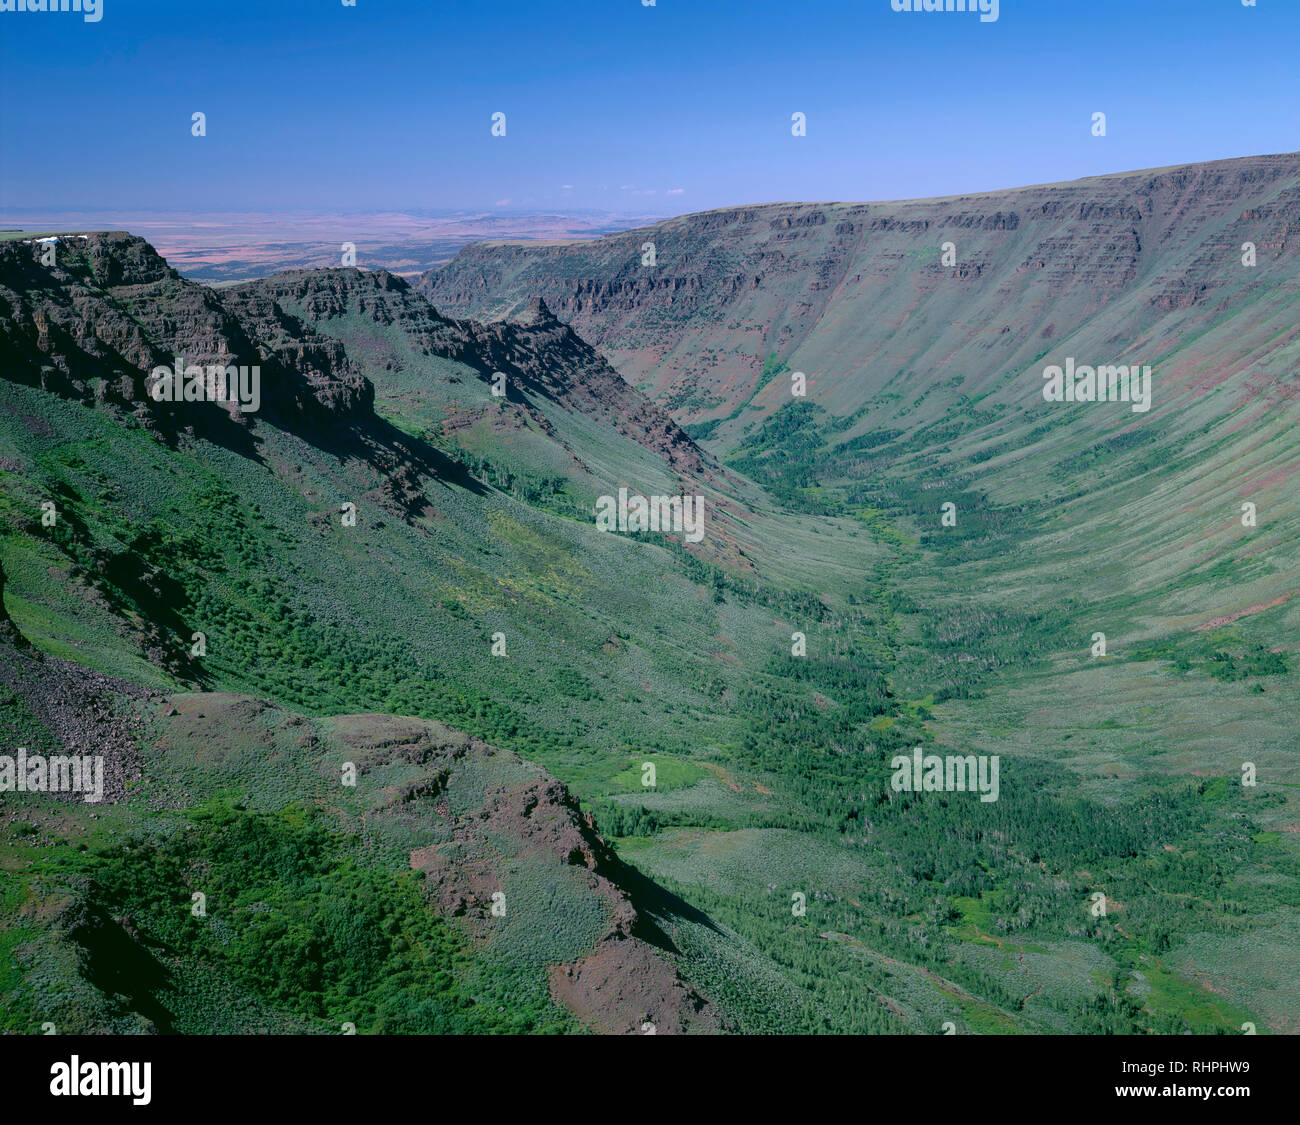 Stati Uniti d'America, Oregon, Steens Mountain Area di protezione, vista verso nord-ovest nella gola Kiger con inizio estate vegetazione greening brevemente. Foto Stock